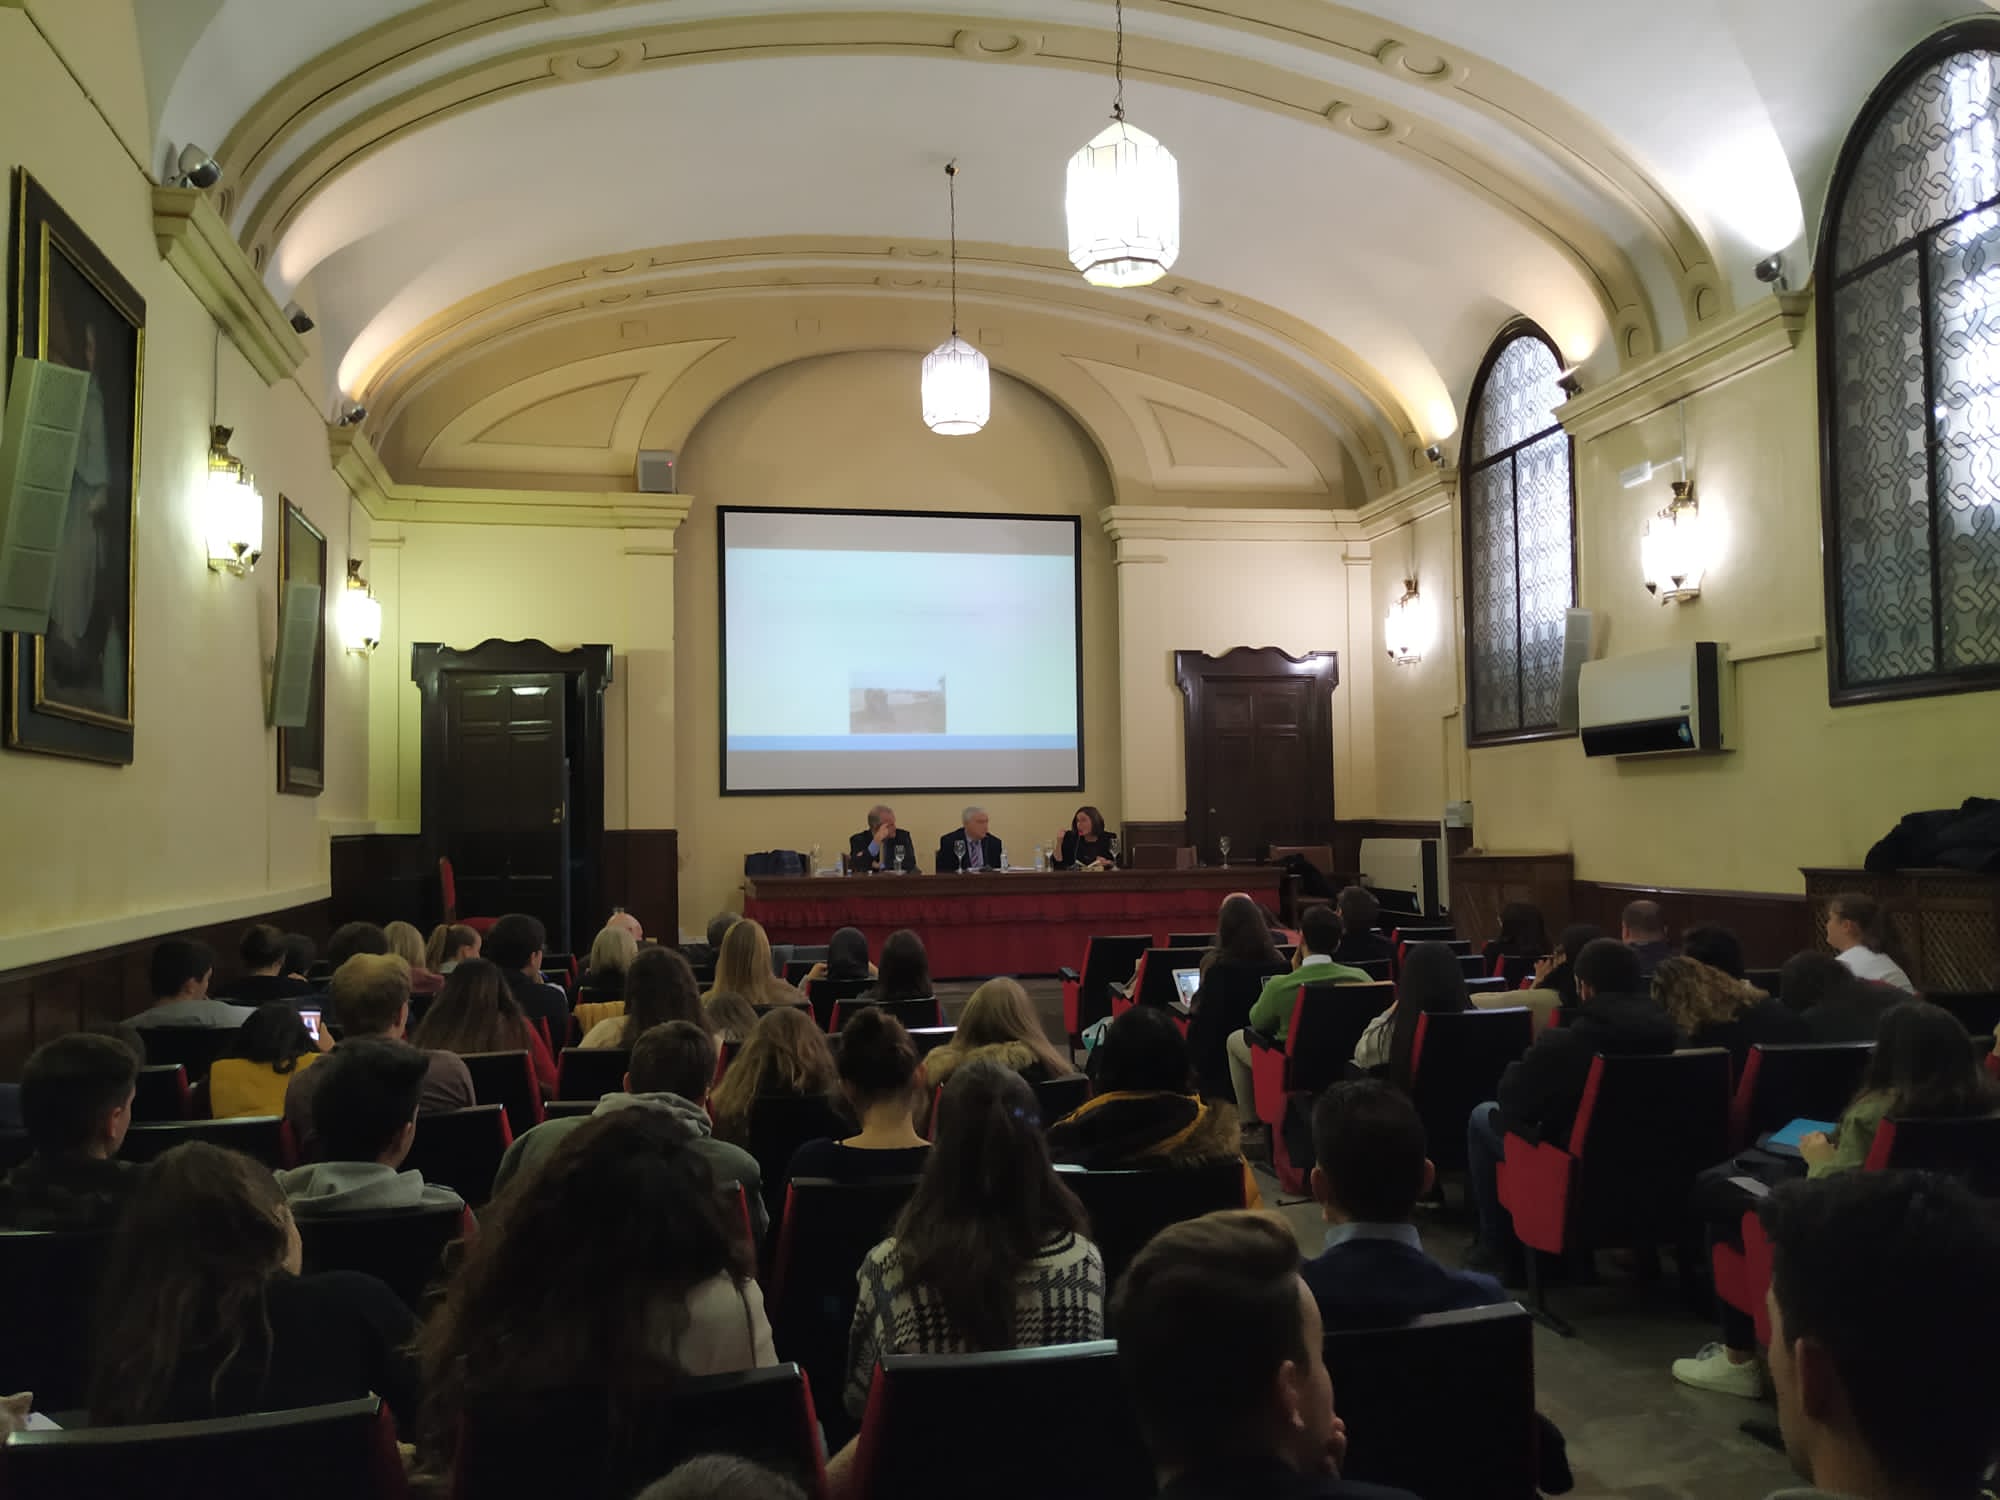 Imagen tomada desde el fondo de la sala donde se puede ver la intervención de los profesores Roldán Barbero y Fernández Arribas